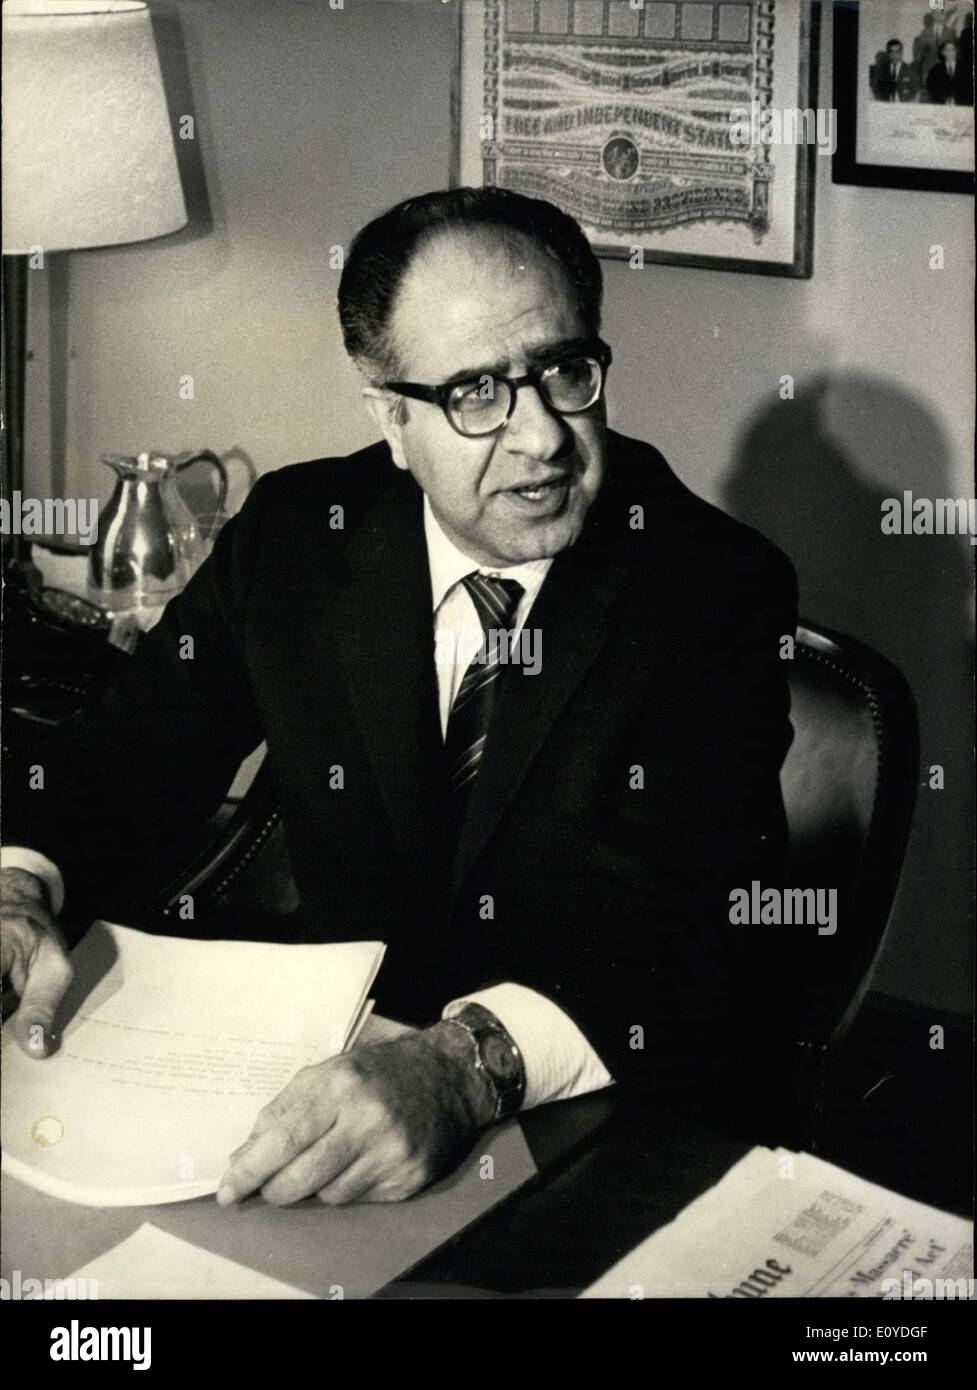 Le 12 décembre 1969 - Il succède à Cabot Lodge comme le chef de la délégation américaine au Vietnam des pourparlers de paix à Paris. PM danois H.C. Hansen, au congrès du parti SPD à Munich. Banque D'Images